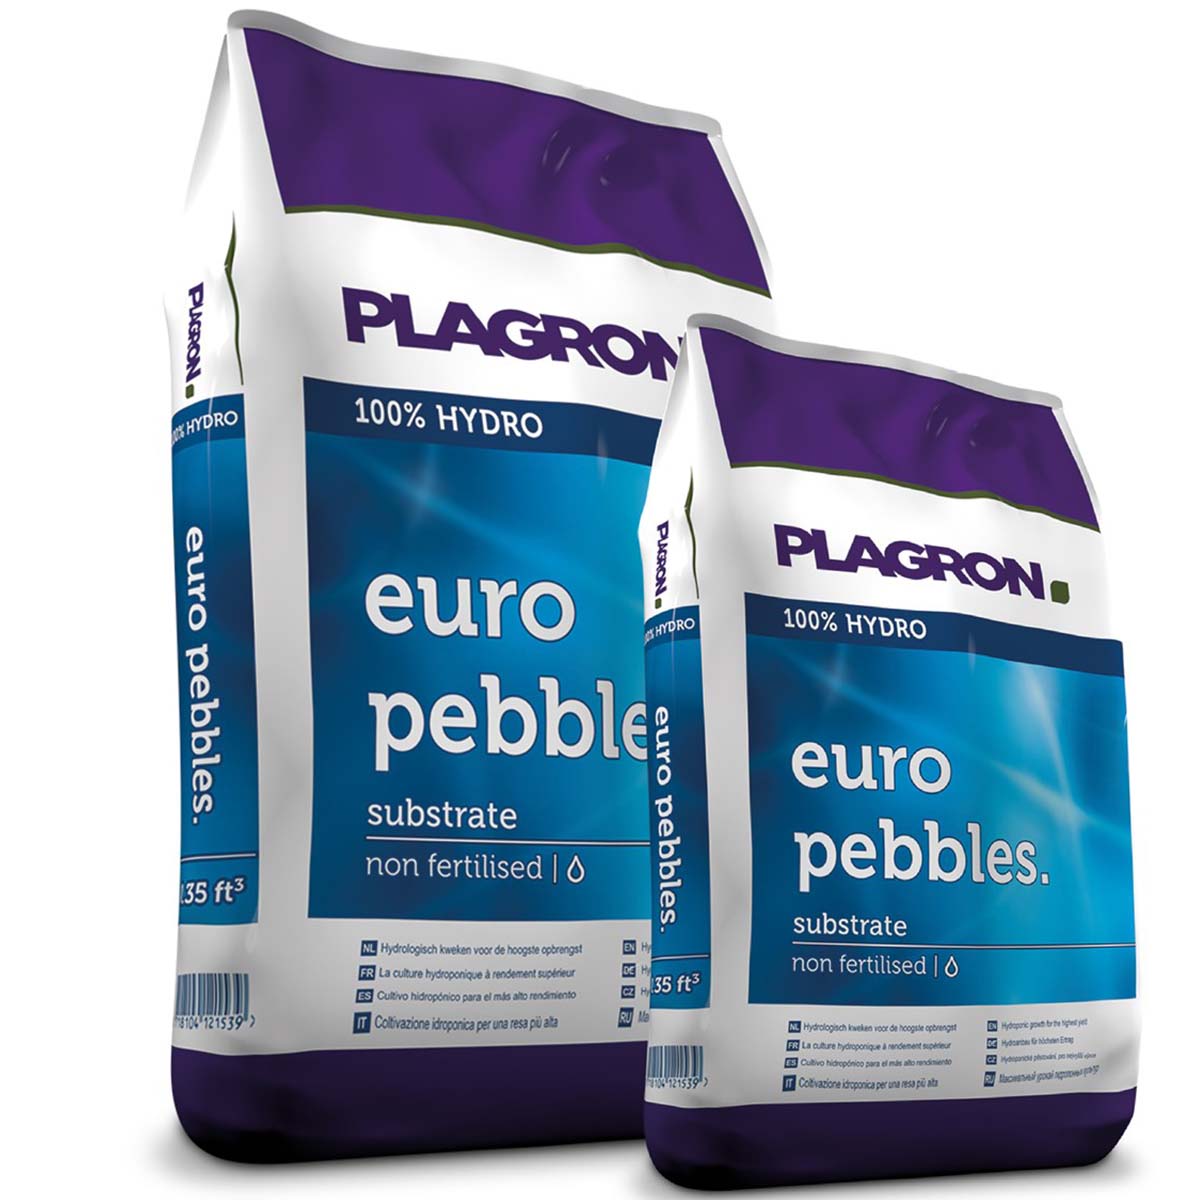 Plagron - Euro Pebbles